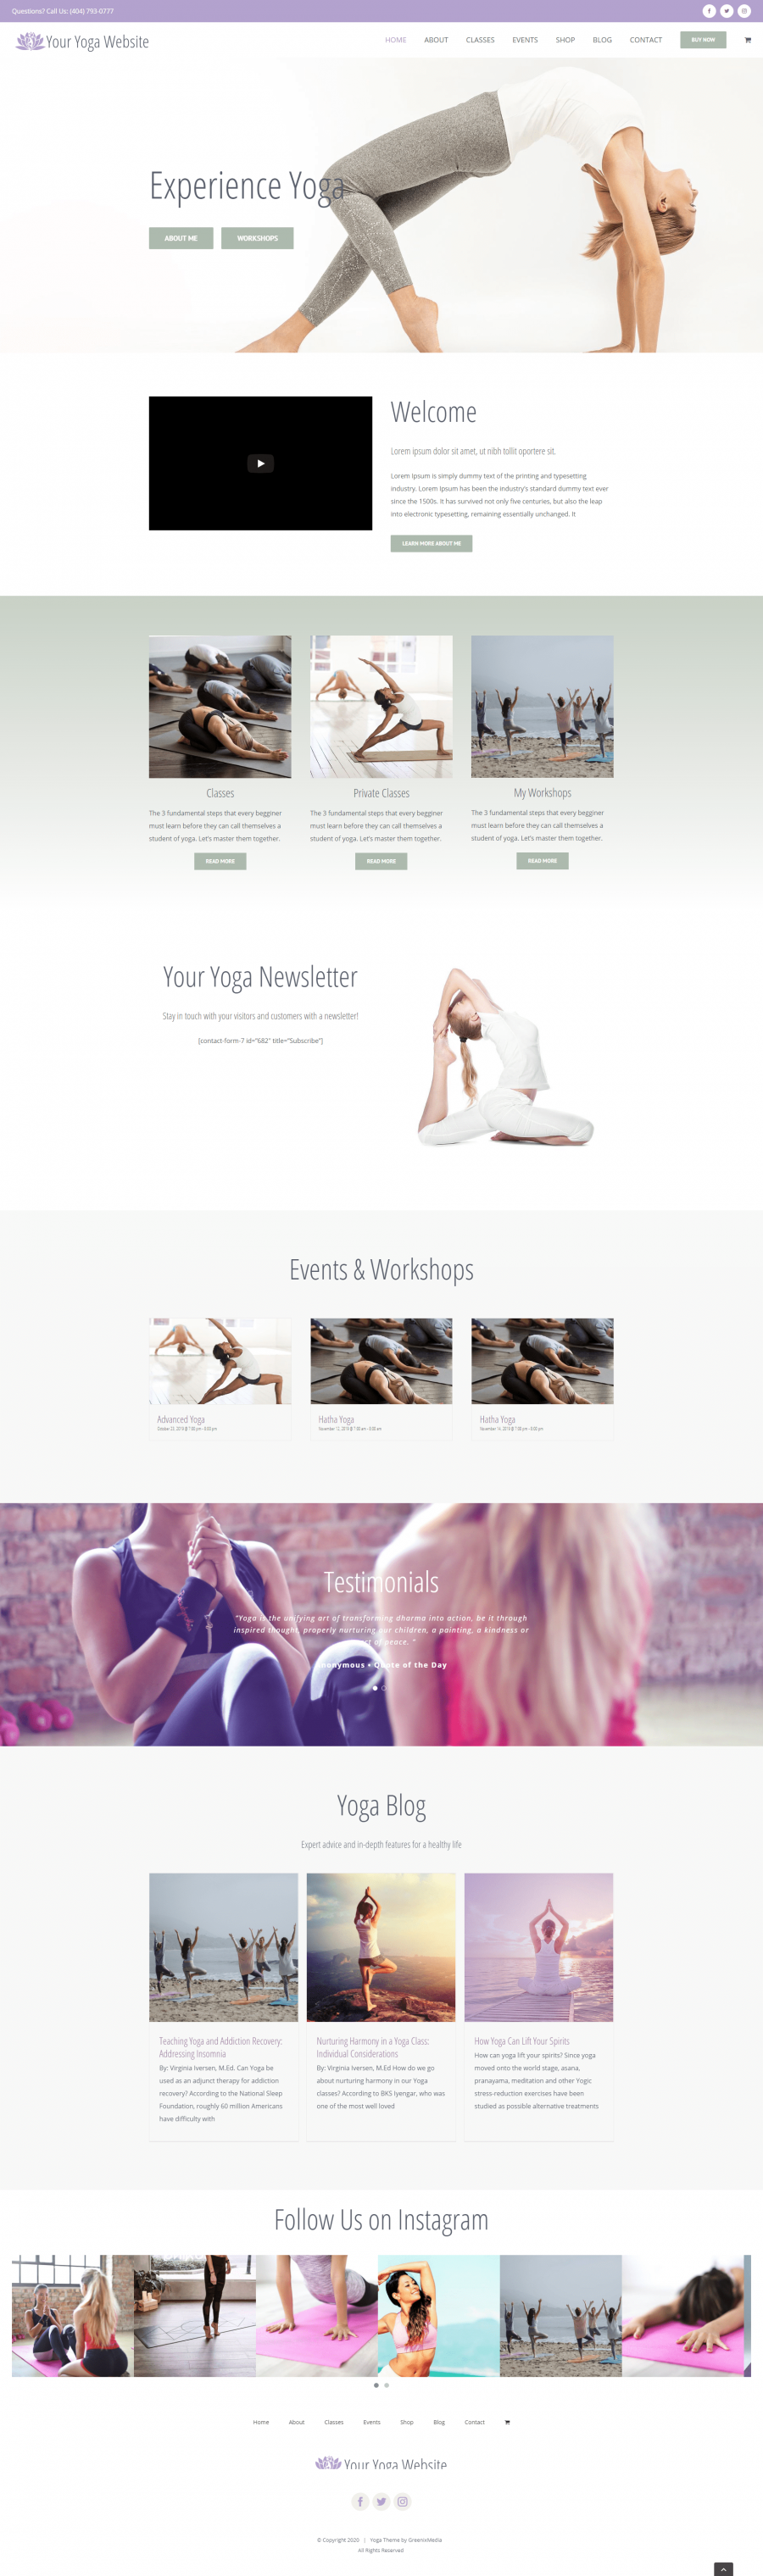 Stunning Yoga Website Design